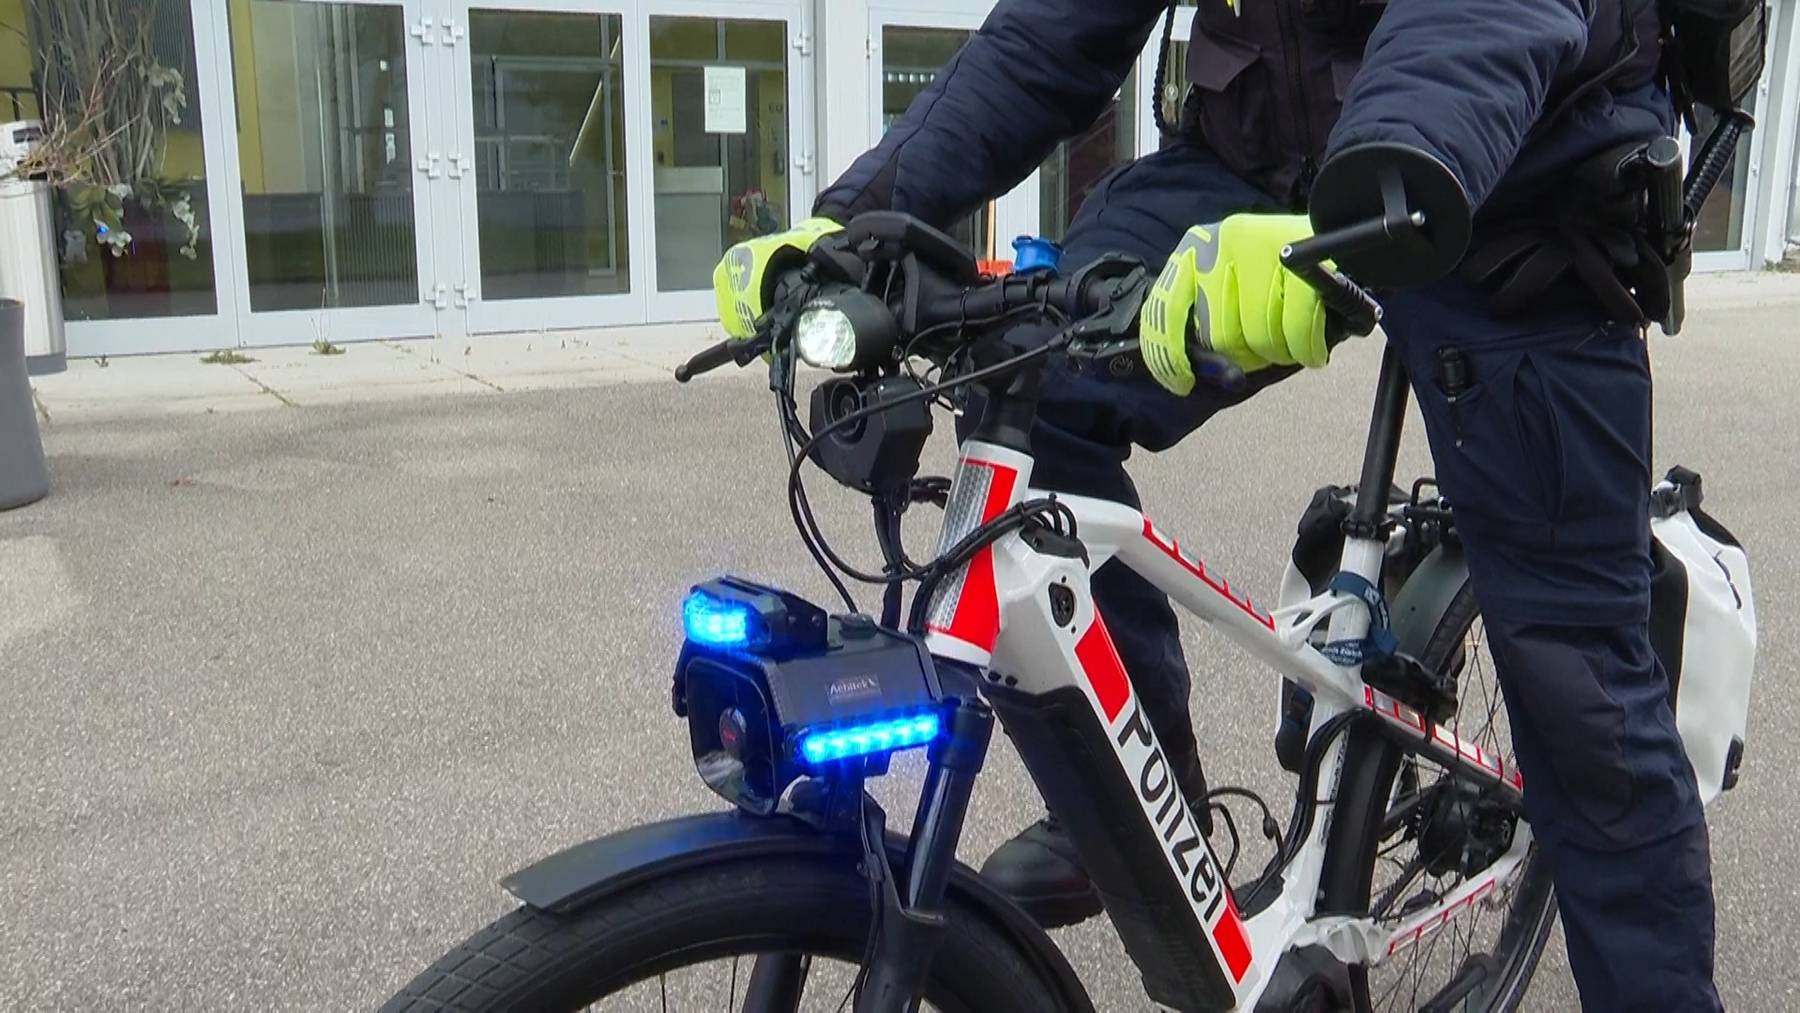 Thumb for ‹Blaulicht und Sirene: So funktionieren die neuen Polizei-E-Bikes›